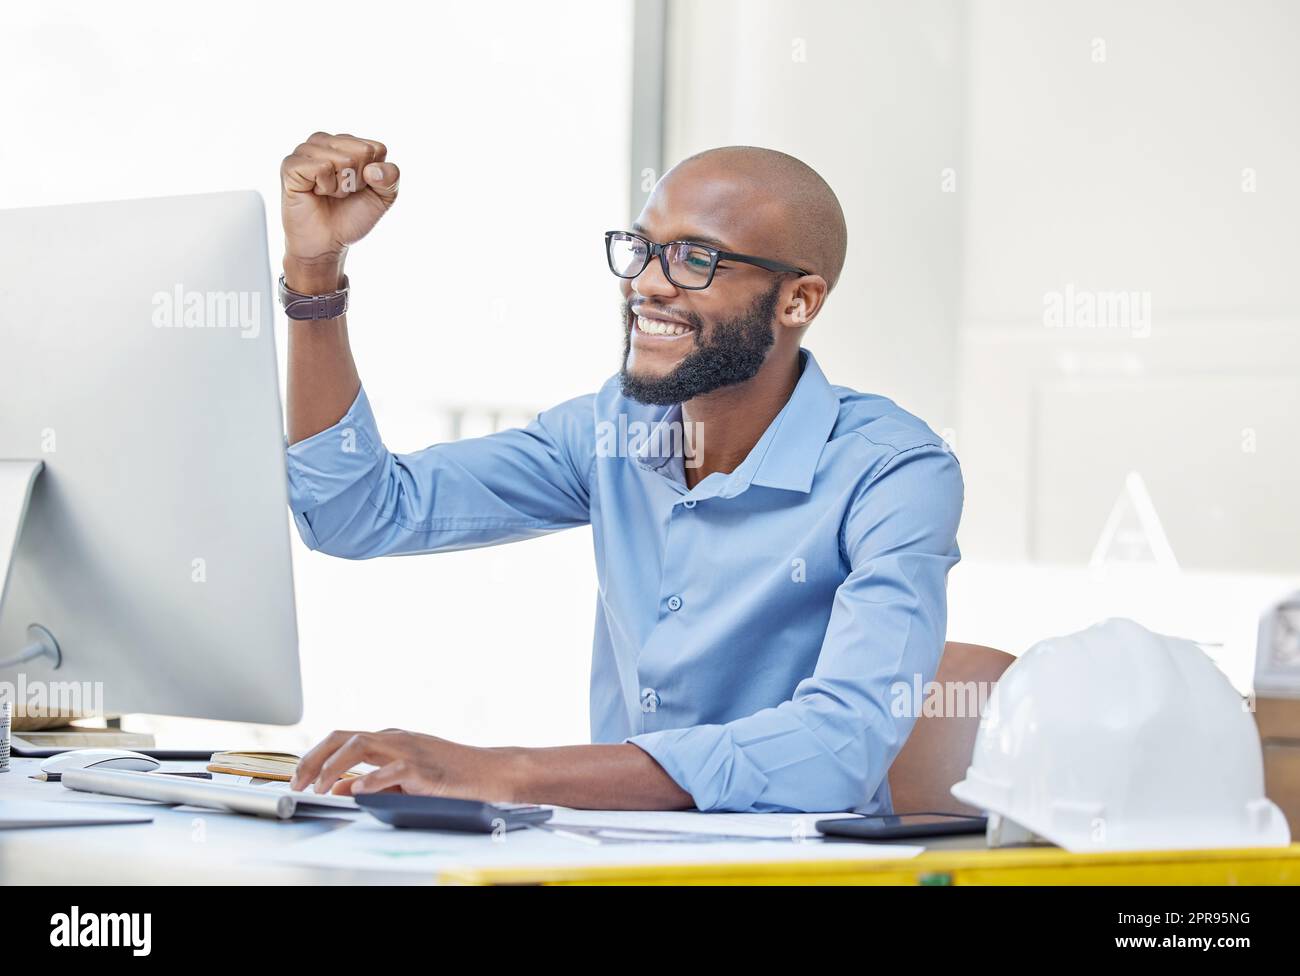 Wenn Sie ein Ziel erreicht haben, bewegen Sie sich zum nächsten. Ein Geschäftsmann, der fröhlich aussieht, während er an seinem Schreibtisch sitzt. Stockfoto